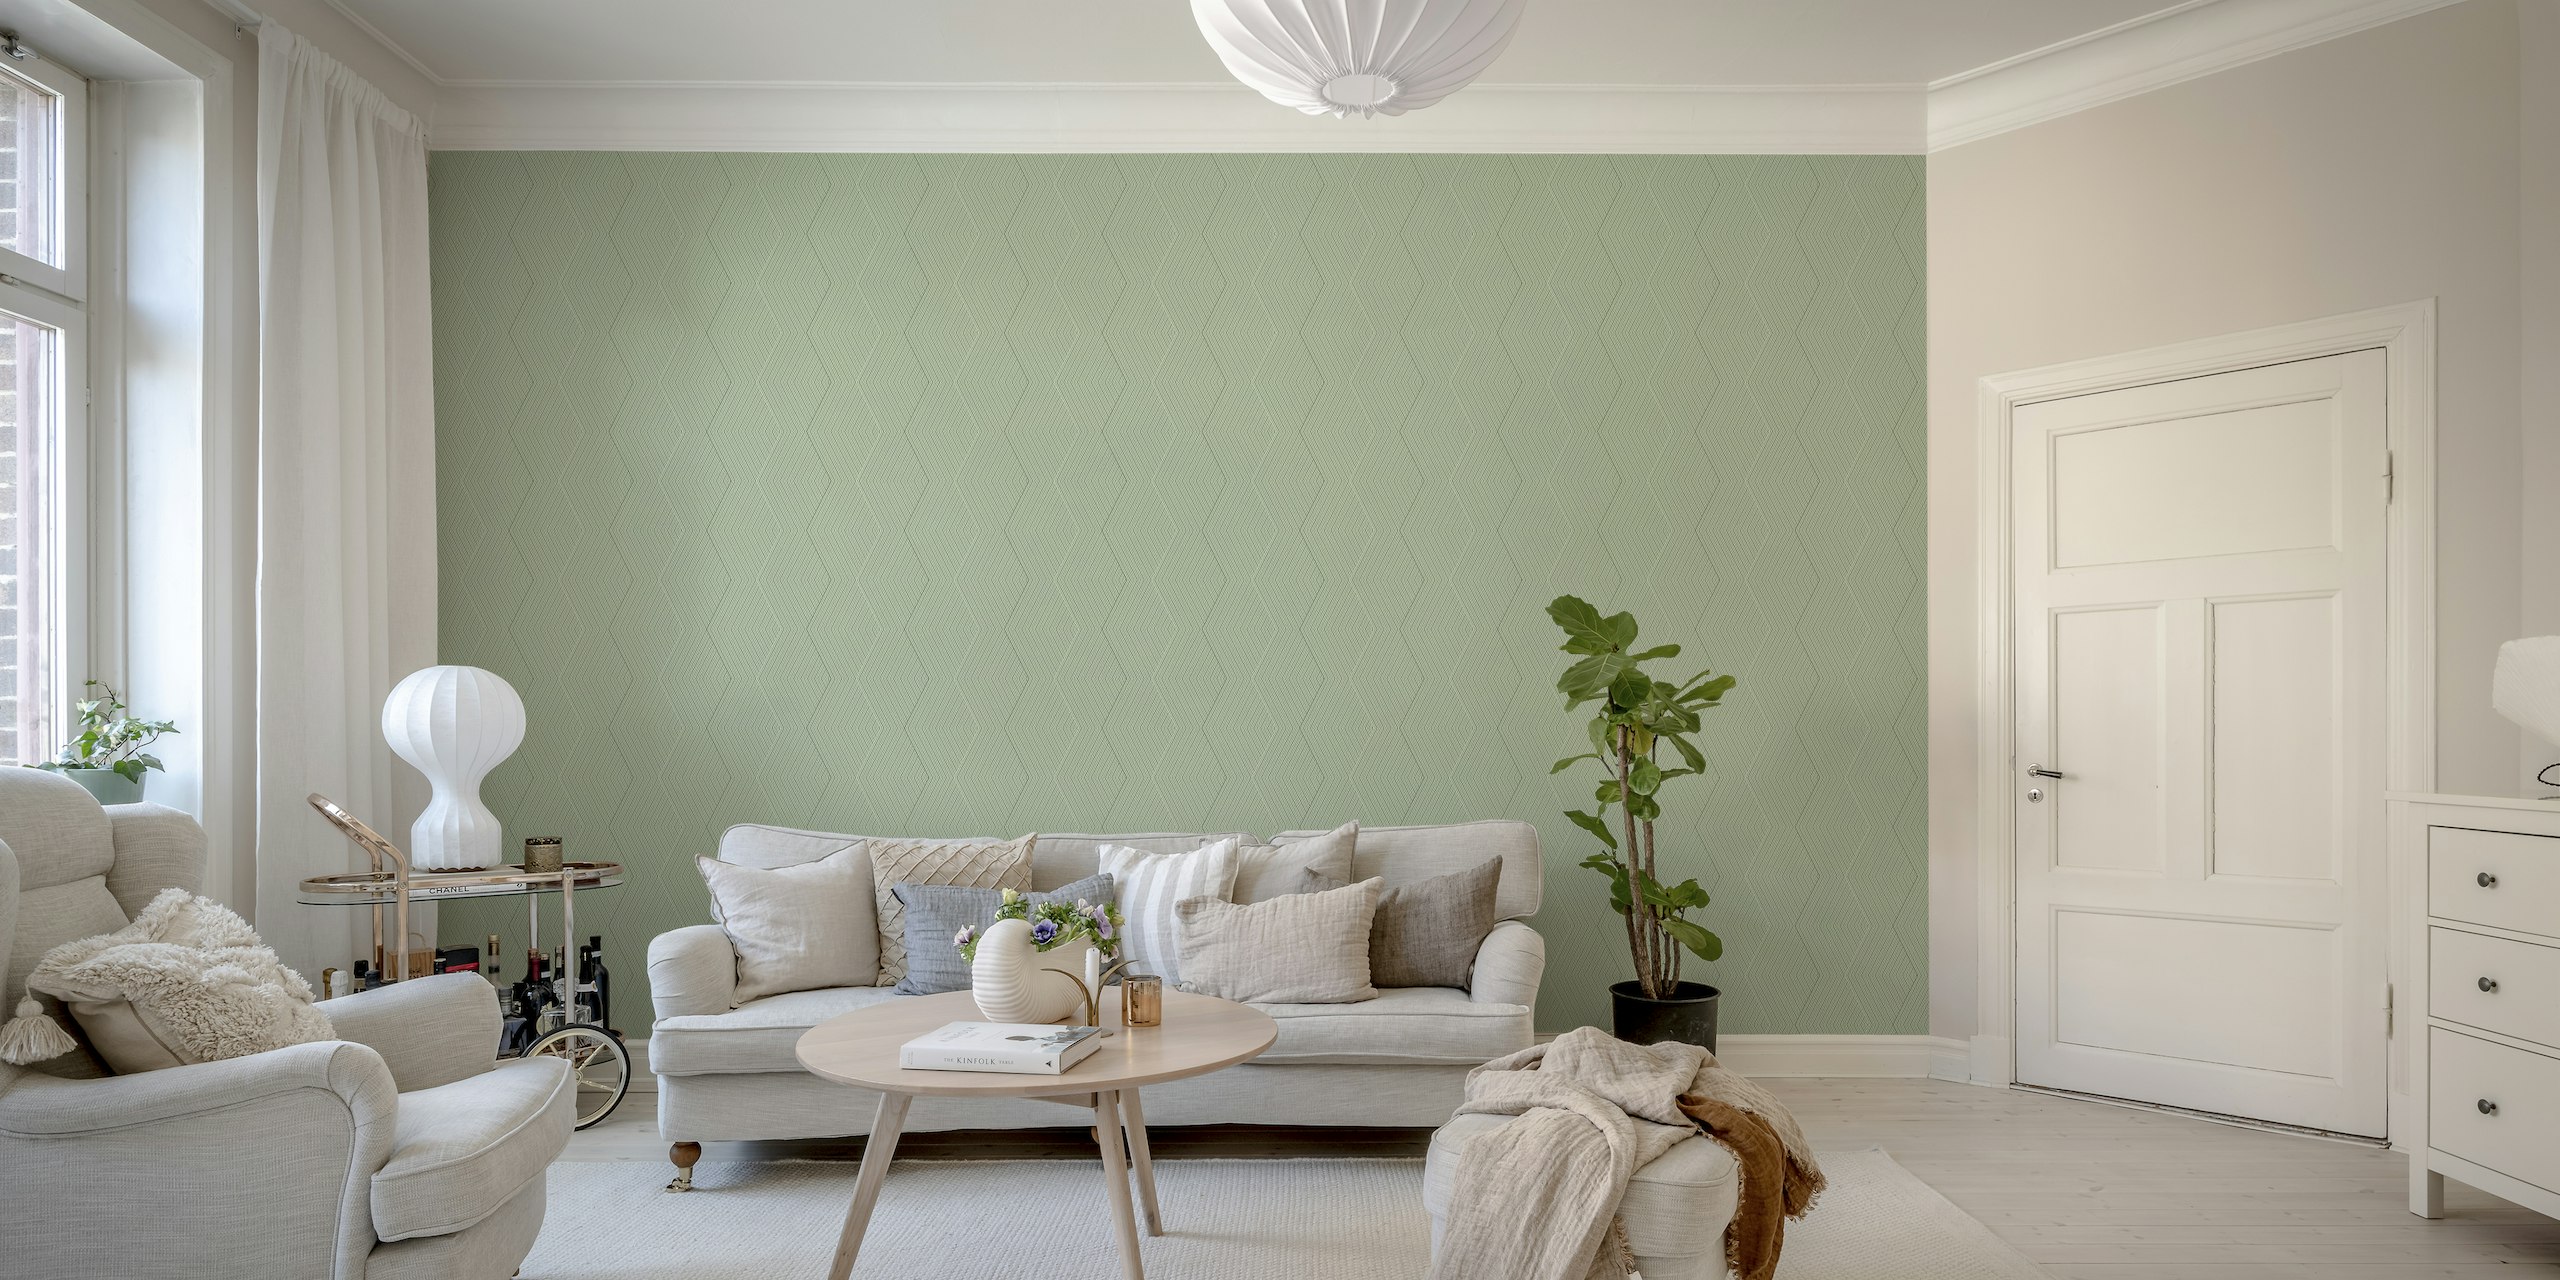 Modernes grünes Wandbild mit Sechseckmuster für einen zeitgenössischen Look